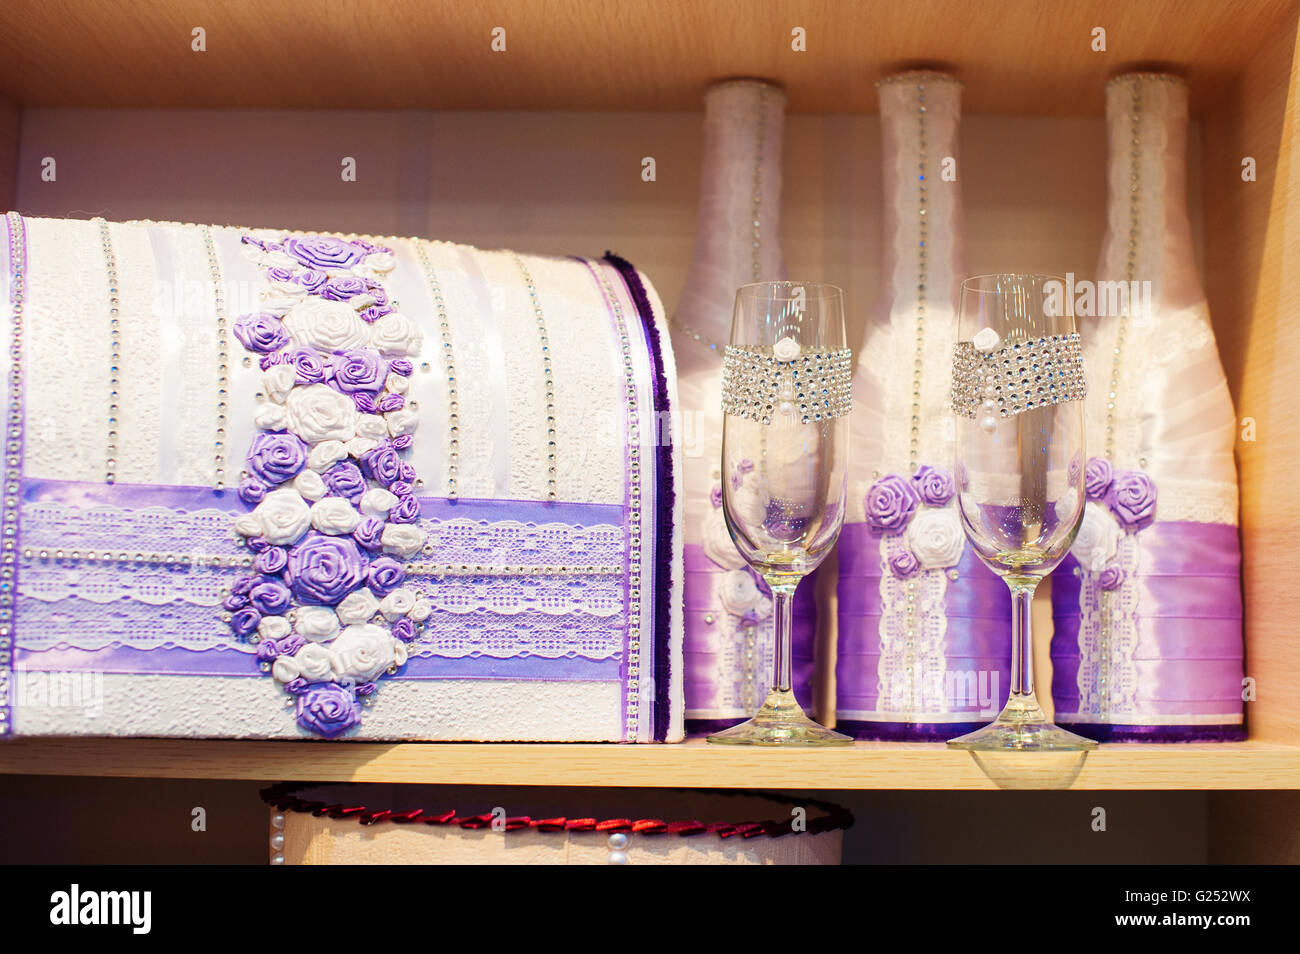 Glas Champagner und eine Box für Geld für die Hochzeit in lila Tönen Stockfoto